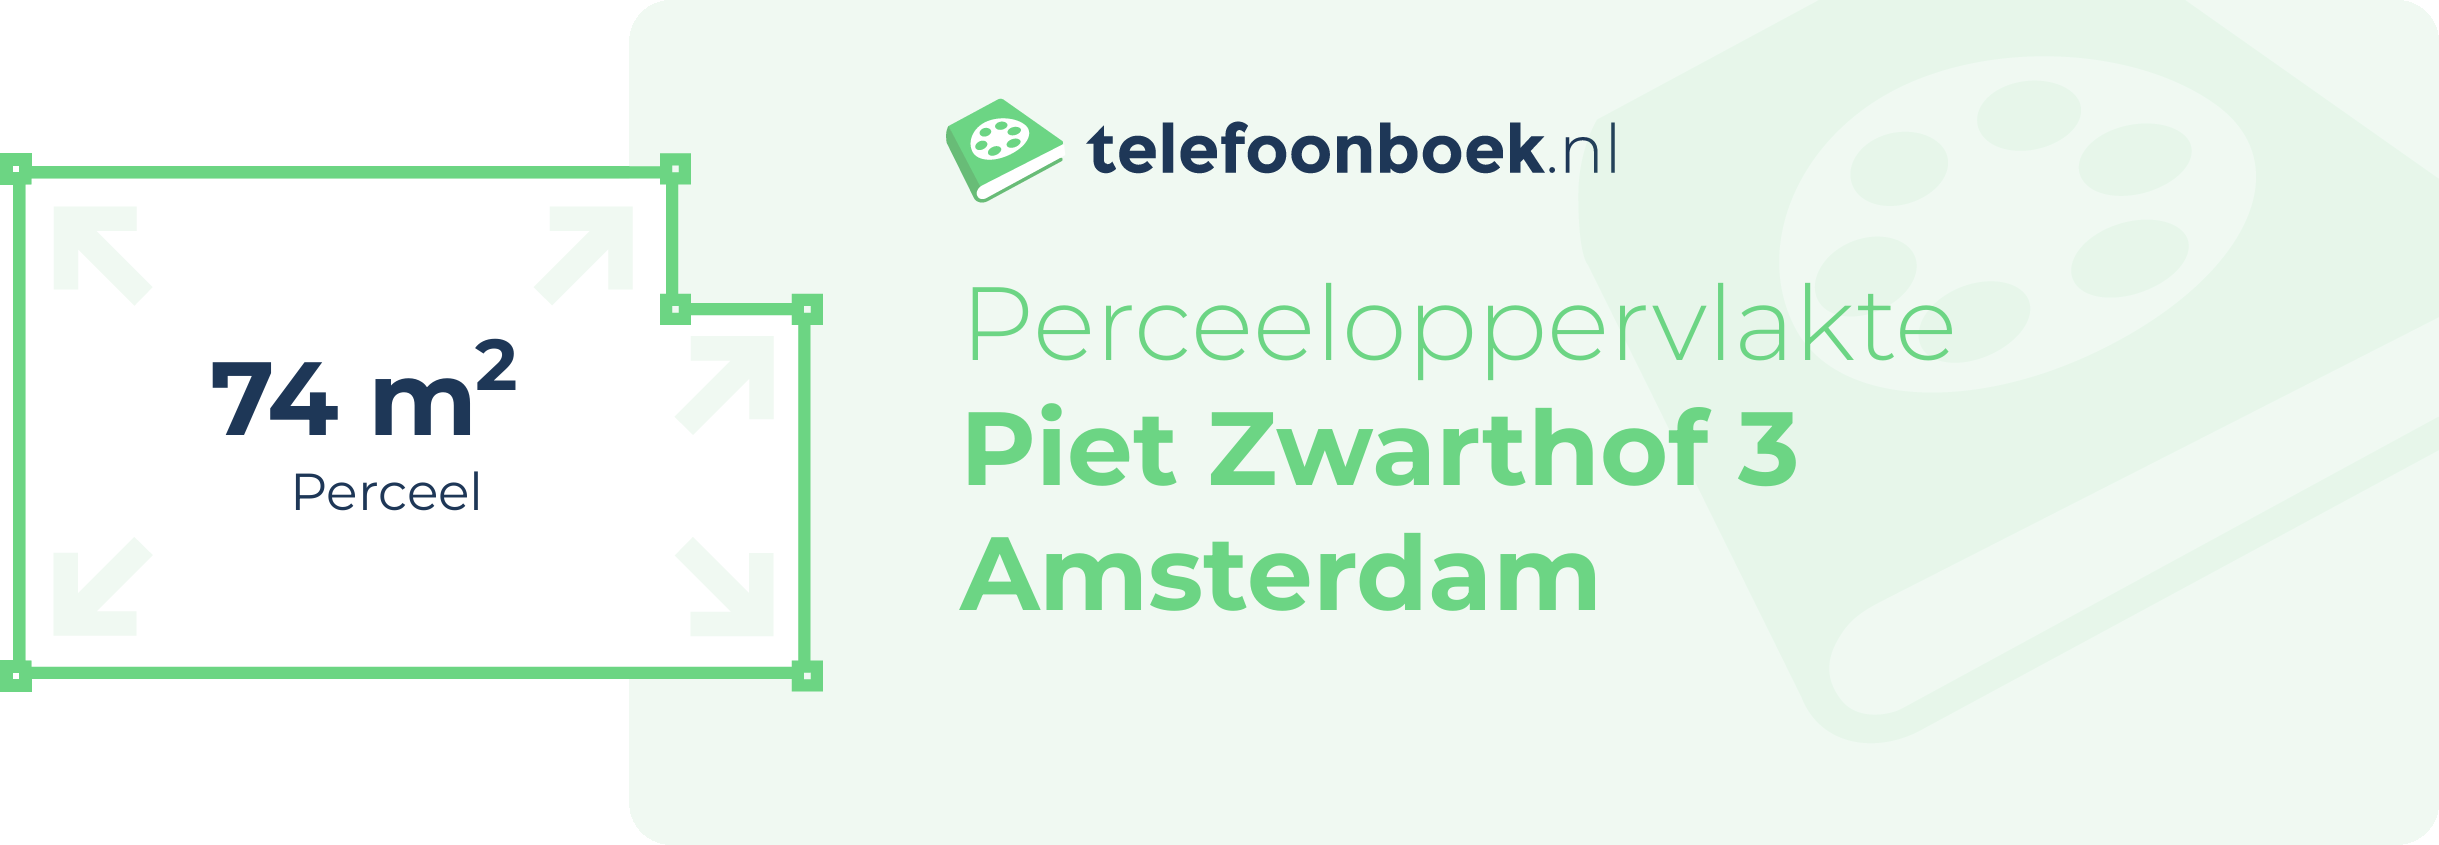 Perceeloppervlakte Piet Zwarthof 3 Amsterdam